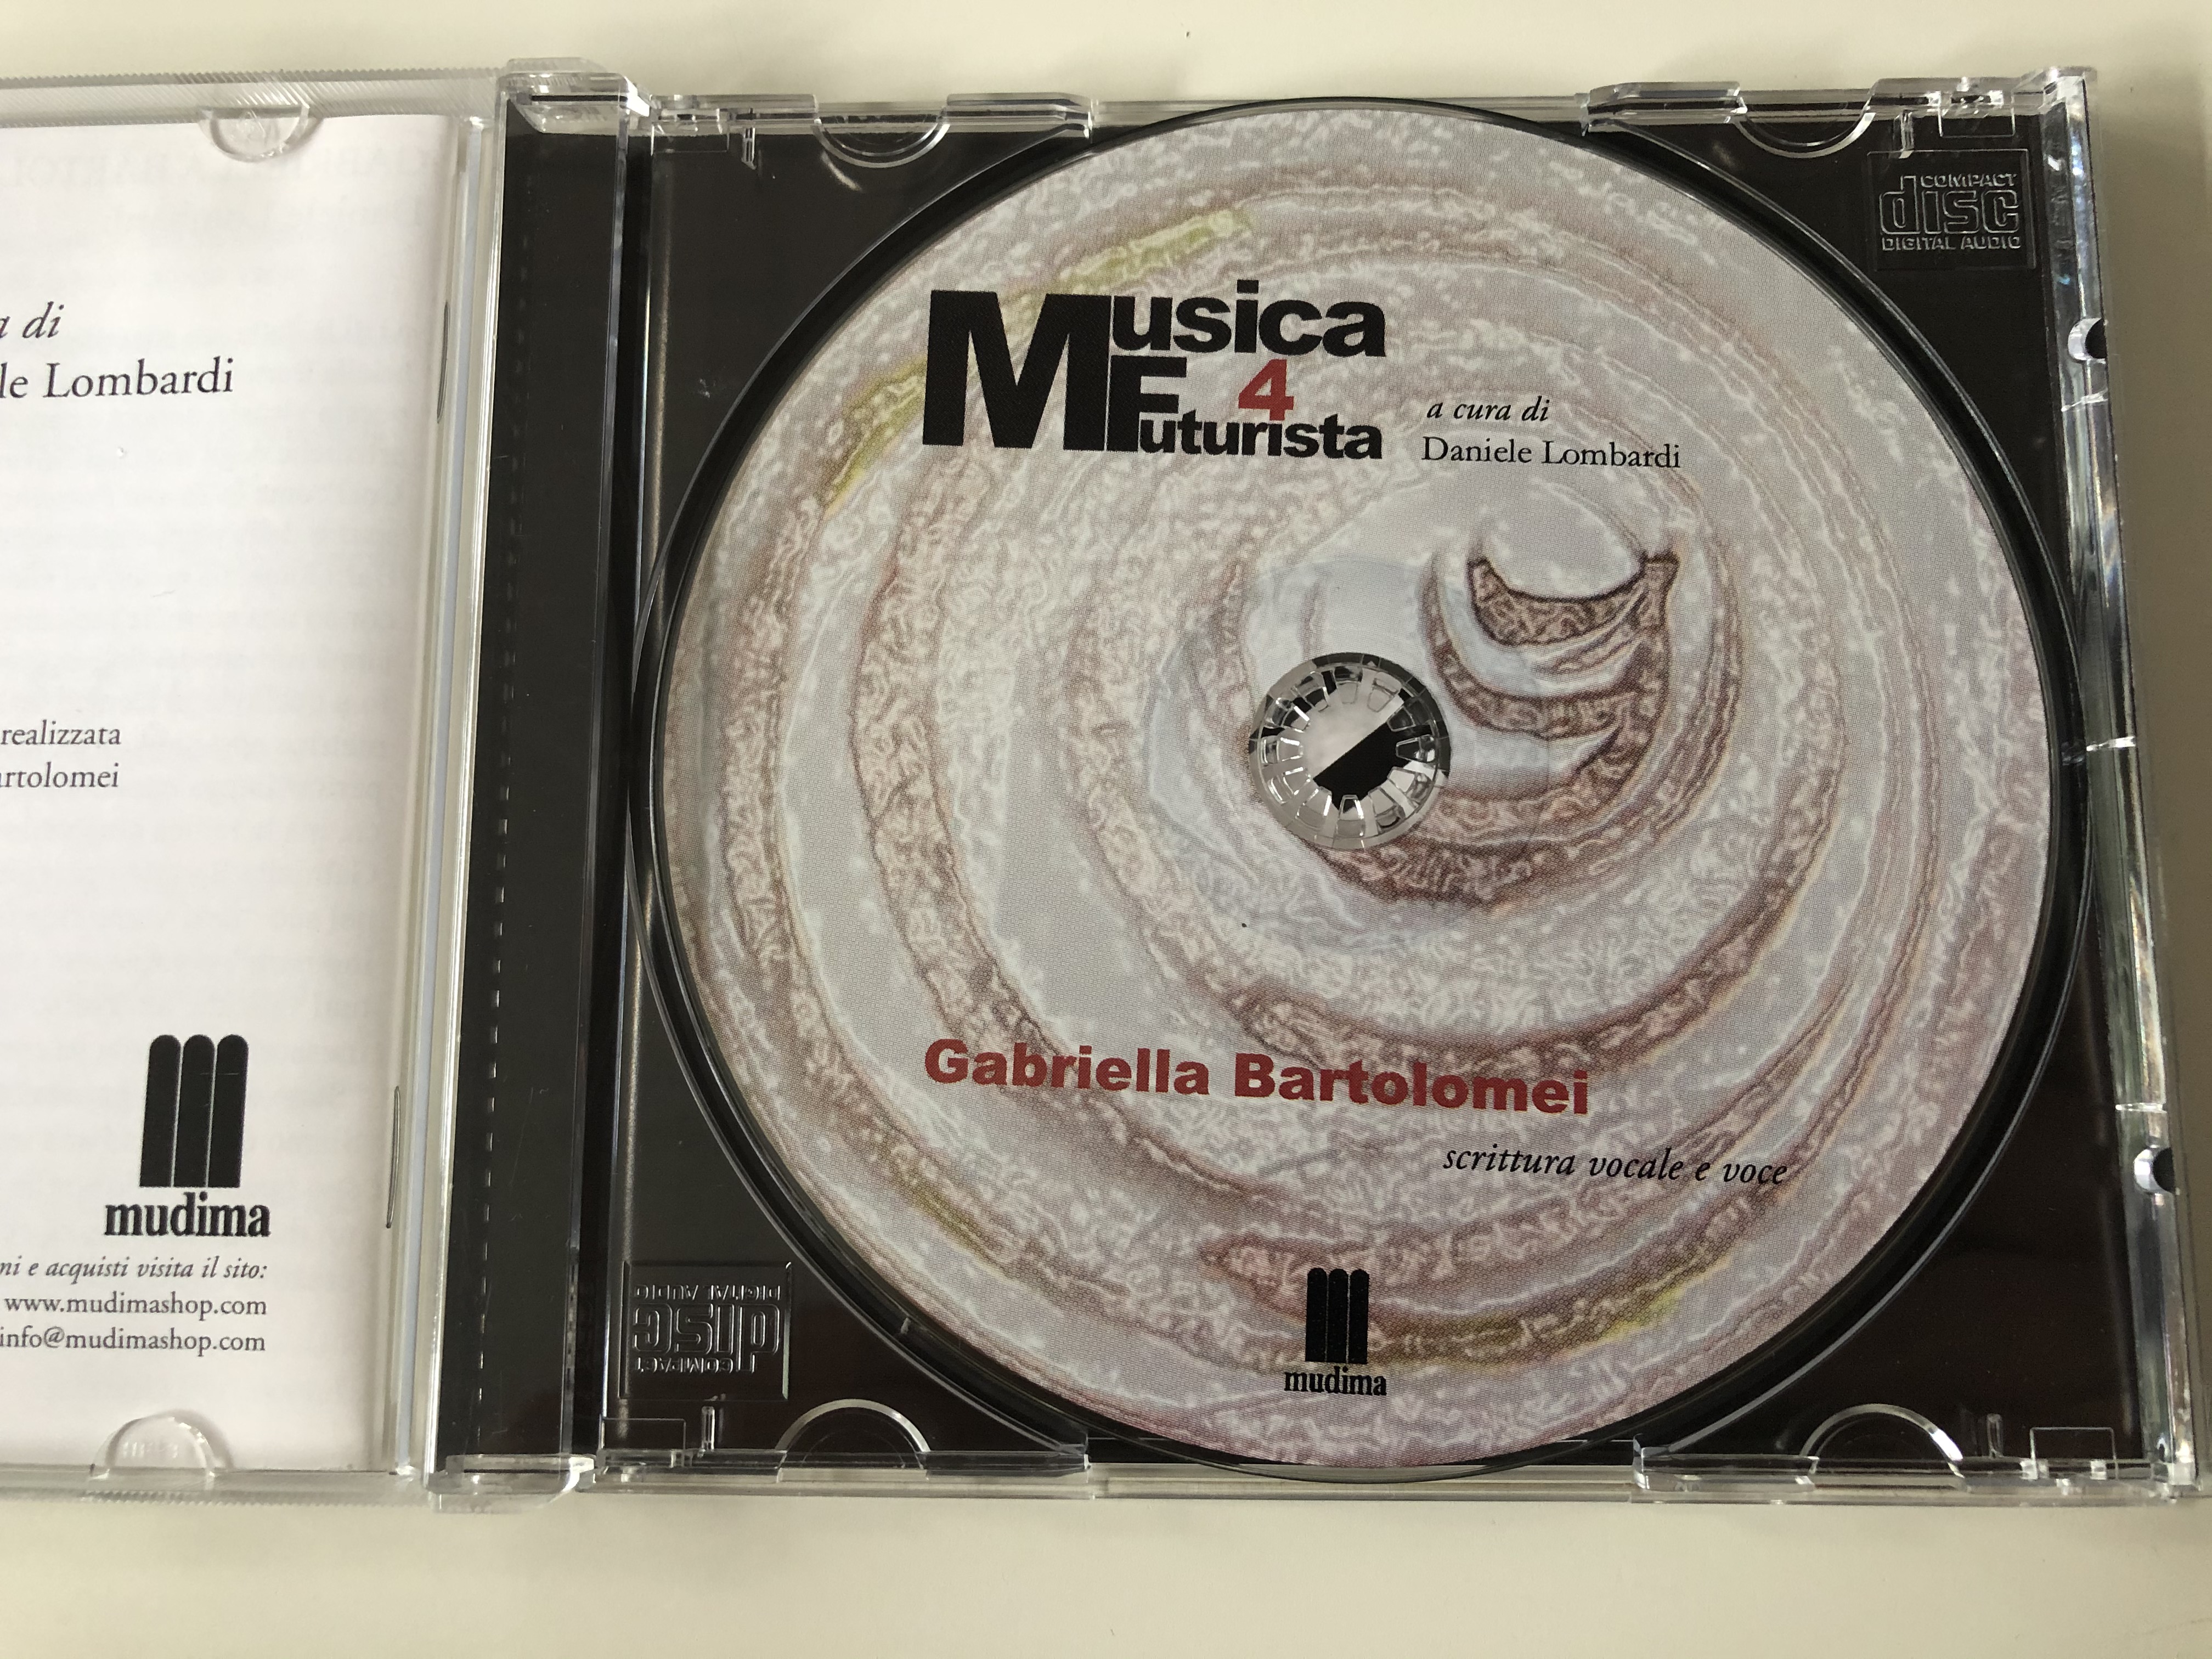 musica-futurista-4-a-cura-di-daniele-lombardi-gabriella-bartolomei-scrittura-vocale-e-voce-mudima-ed.-musicali-audio-cd-2010-8033224410296-12-.jpg